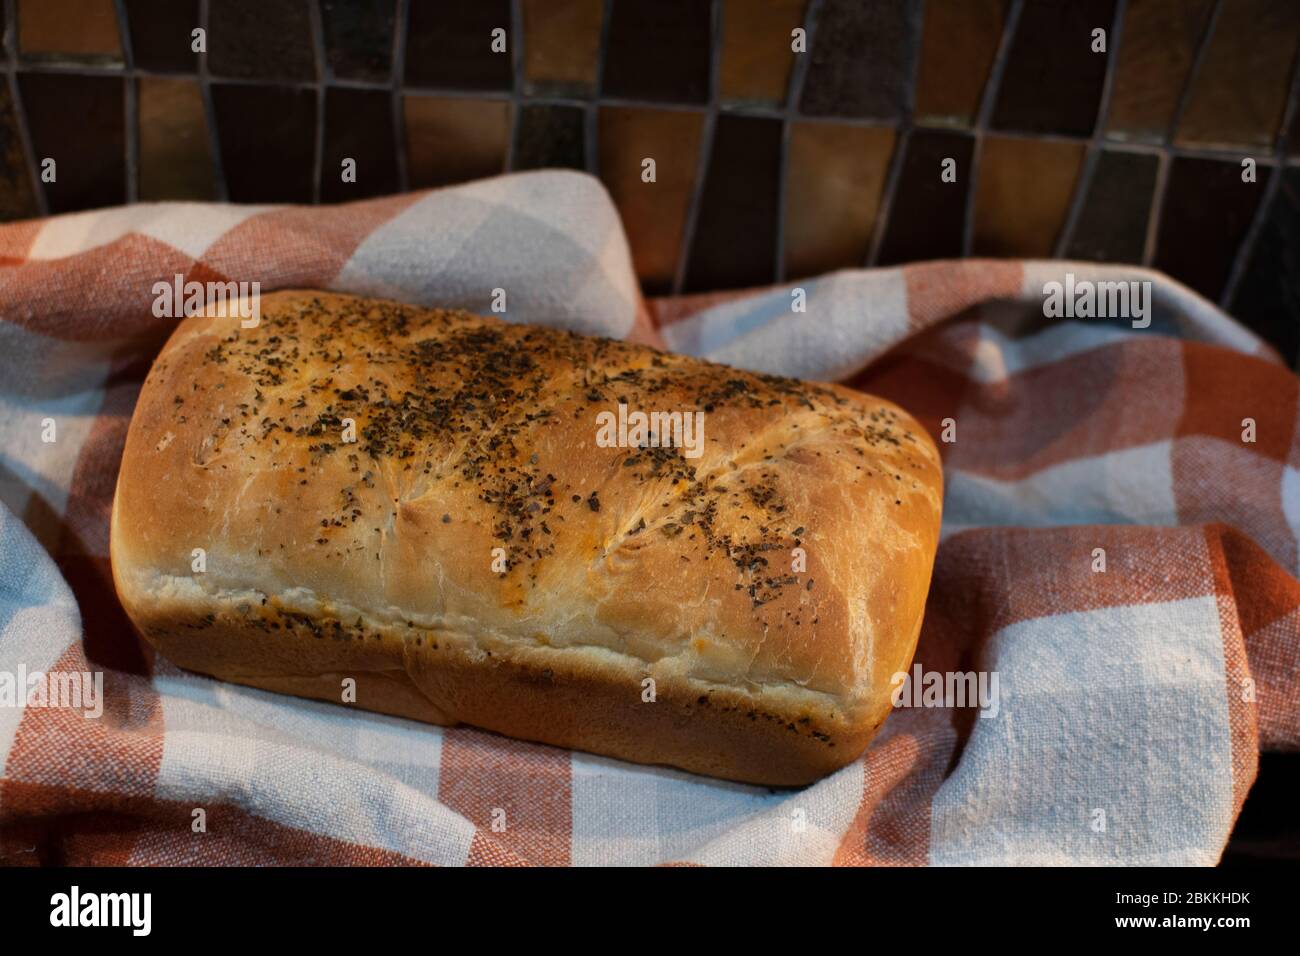 Frisch gebackenes Brot auf einem orange-grauen karierten Handtuch auf einer Küchentischfläche Stockfoto